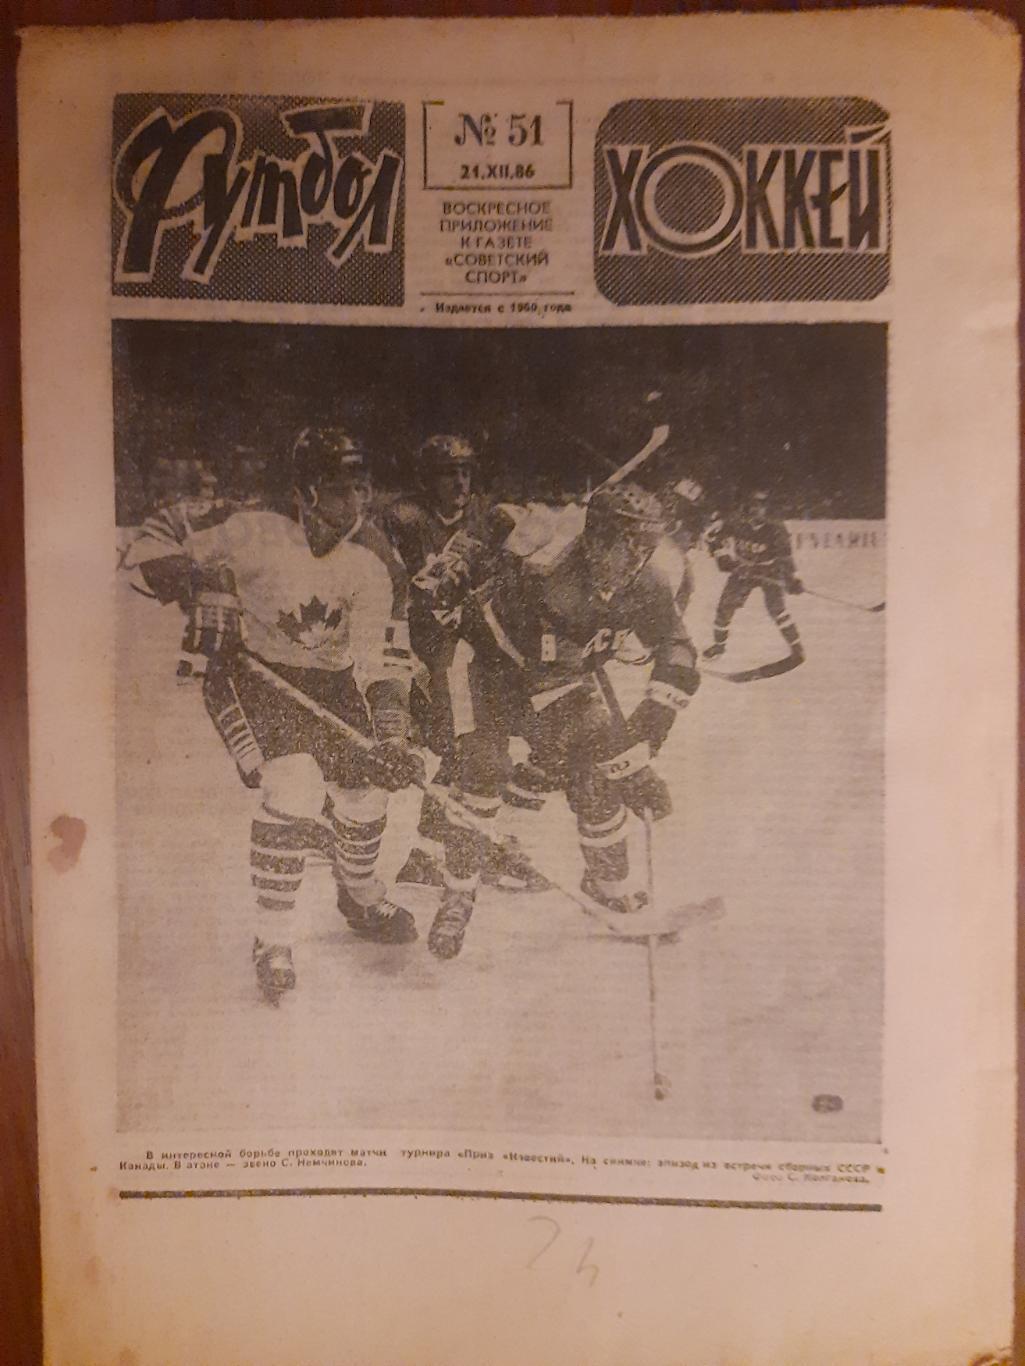 еженедельник футбол-хоккей #51,1986г.